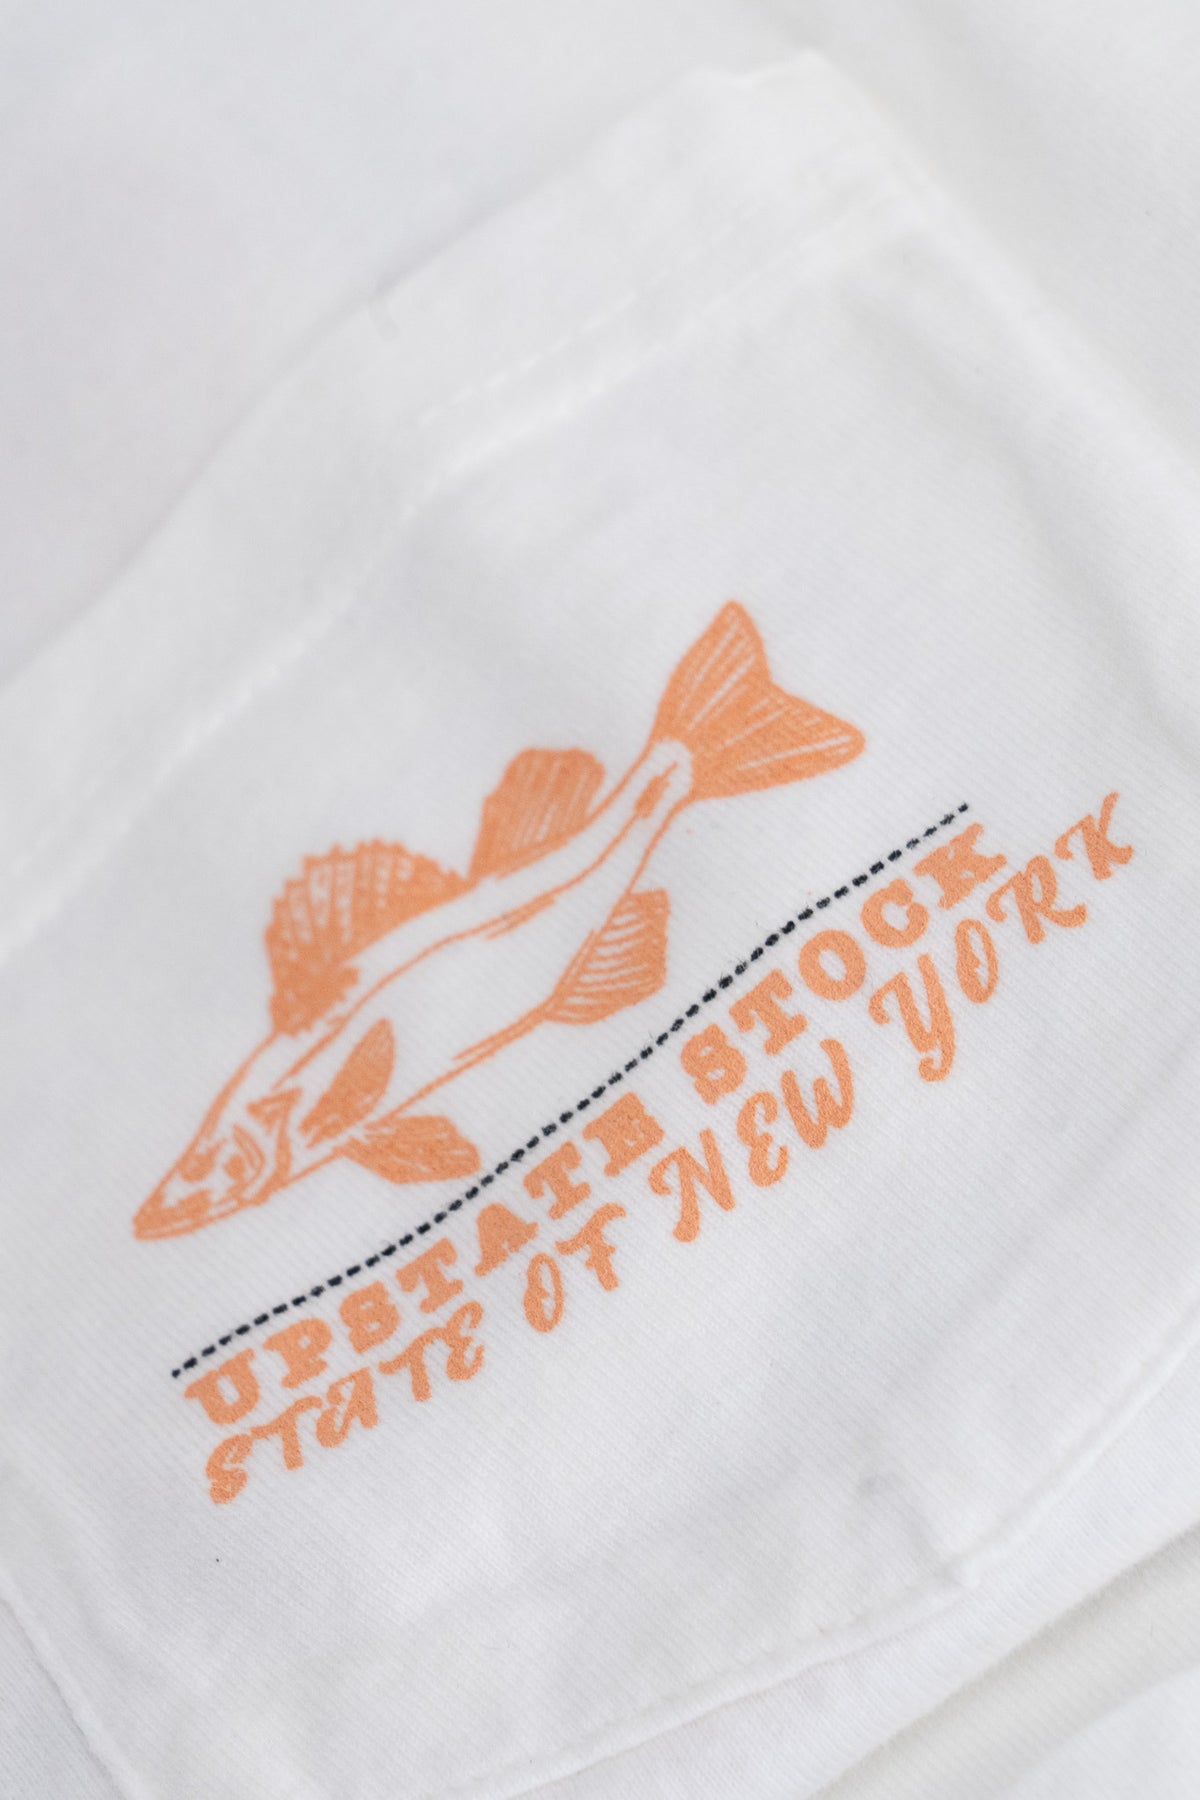 The American Cotton Pocket Tshirt - FISHING LICENSE